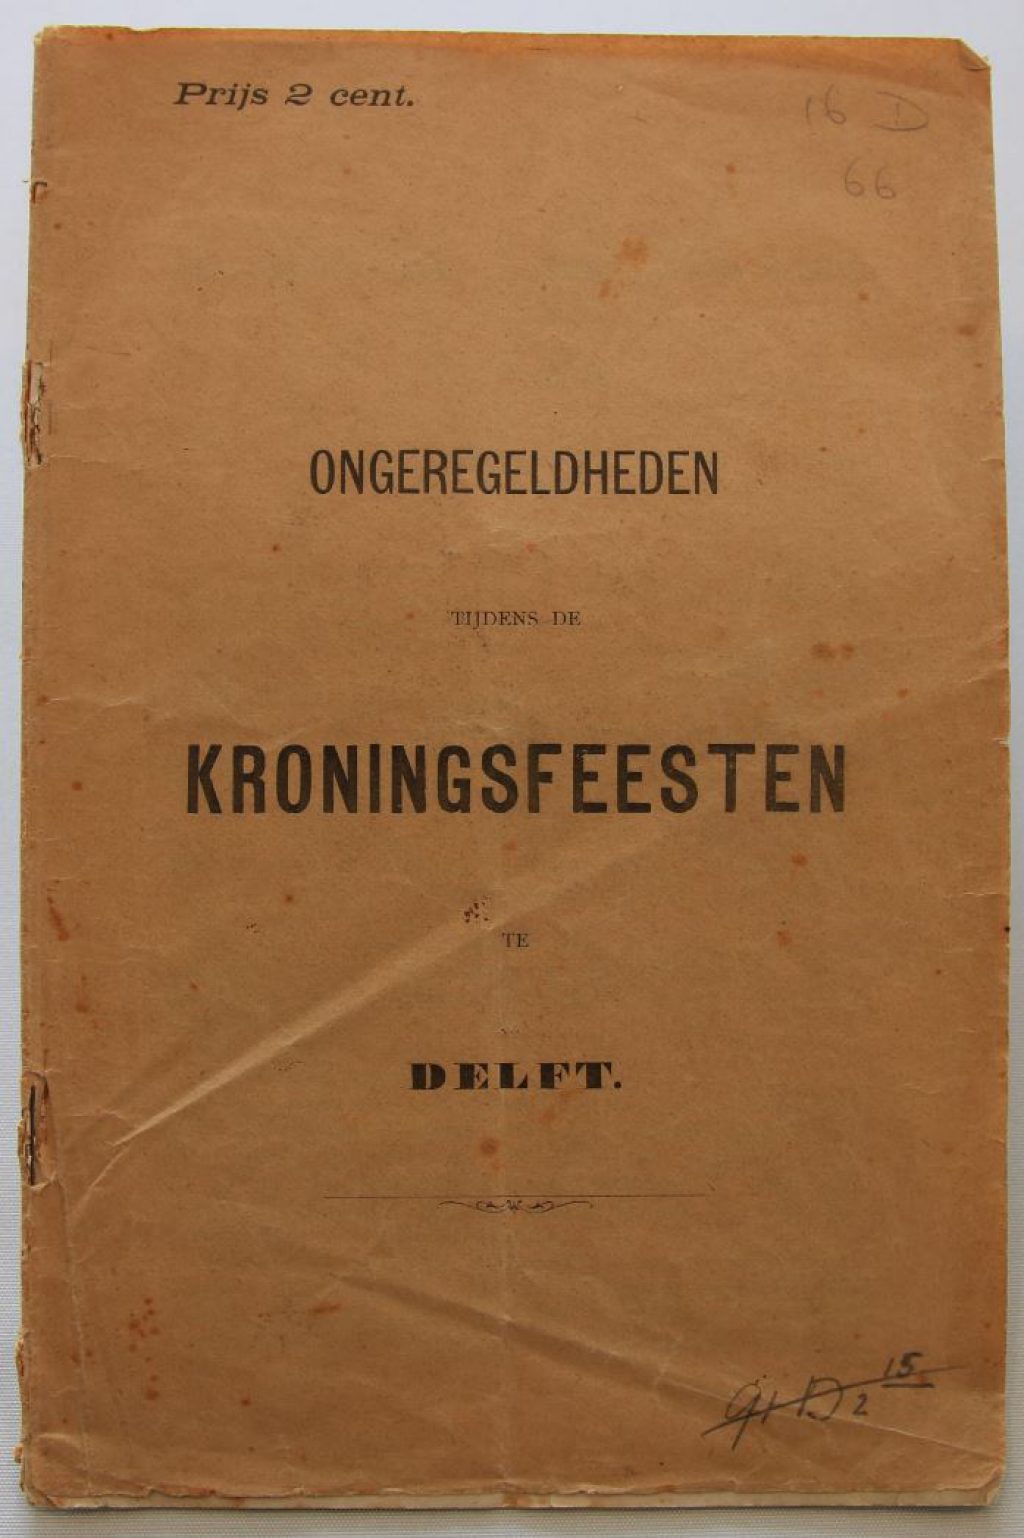 Ongeregeldheden tijdens de kroningsfeesten te Delft, 1898. (bibliotheek)